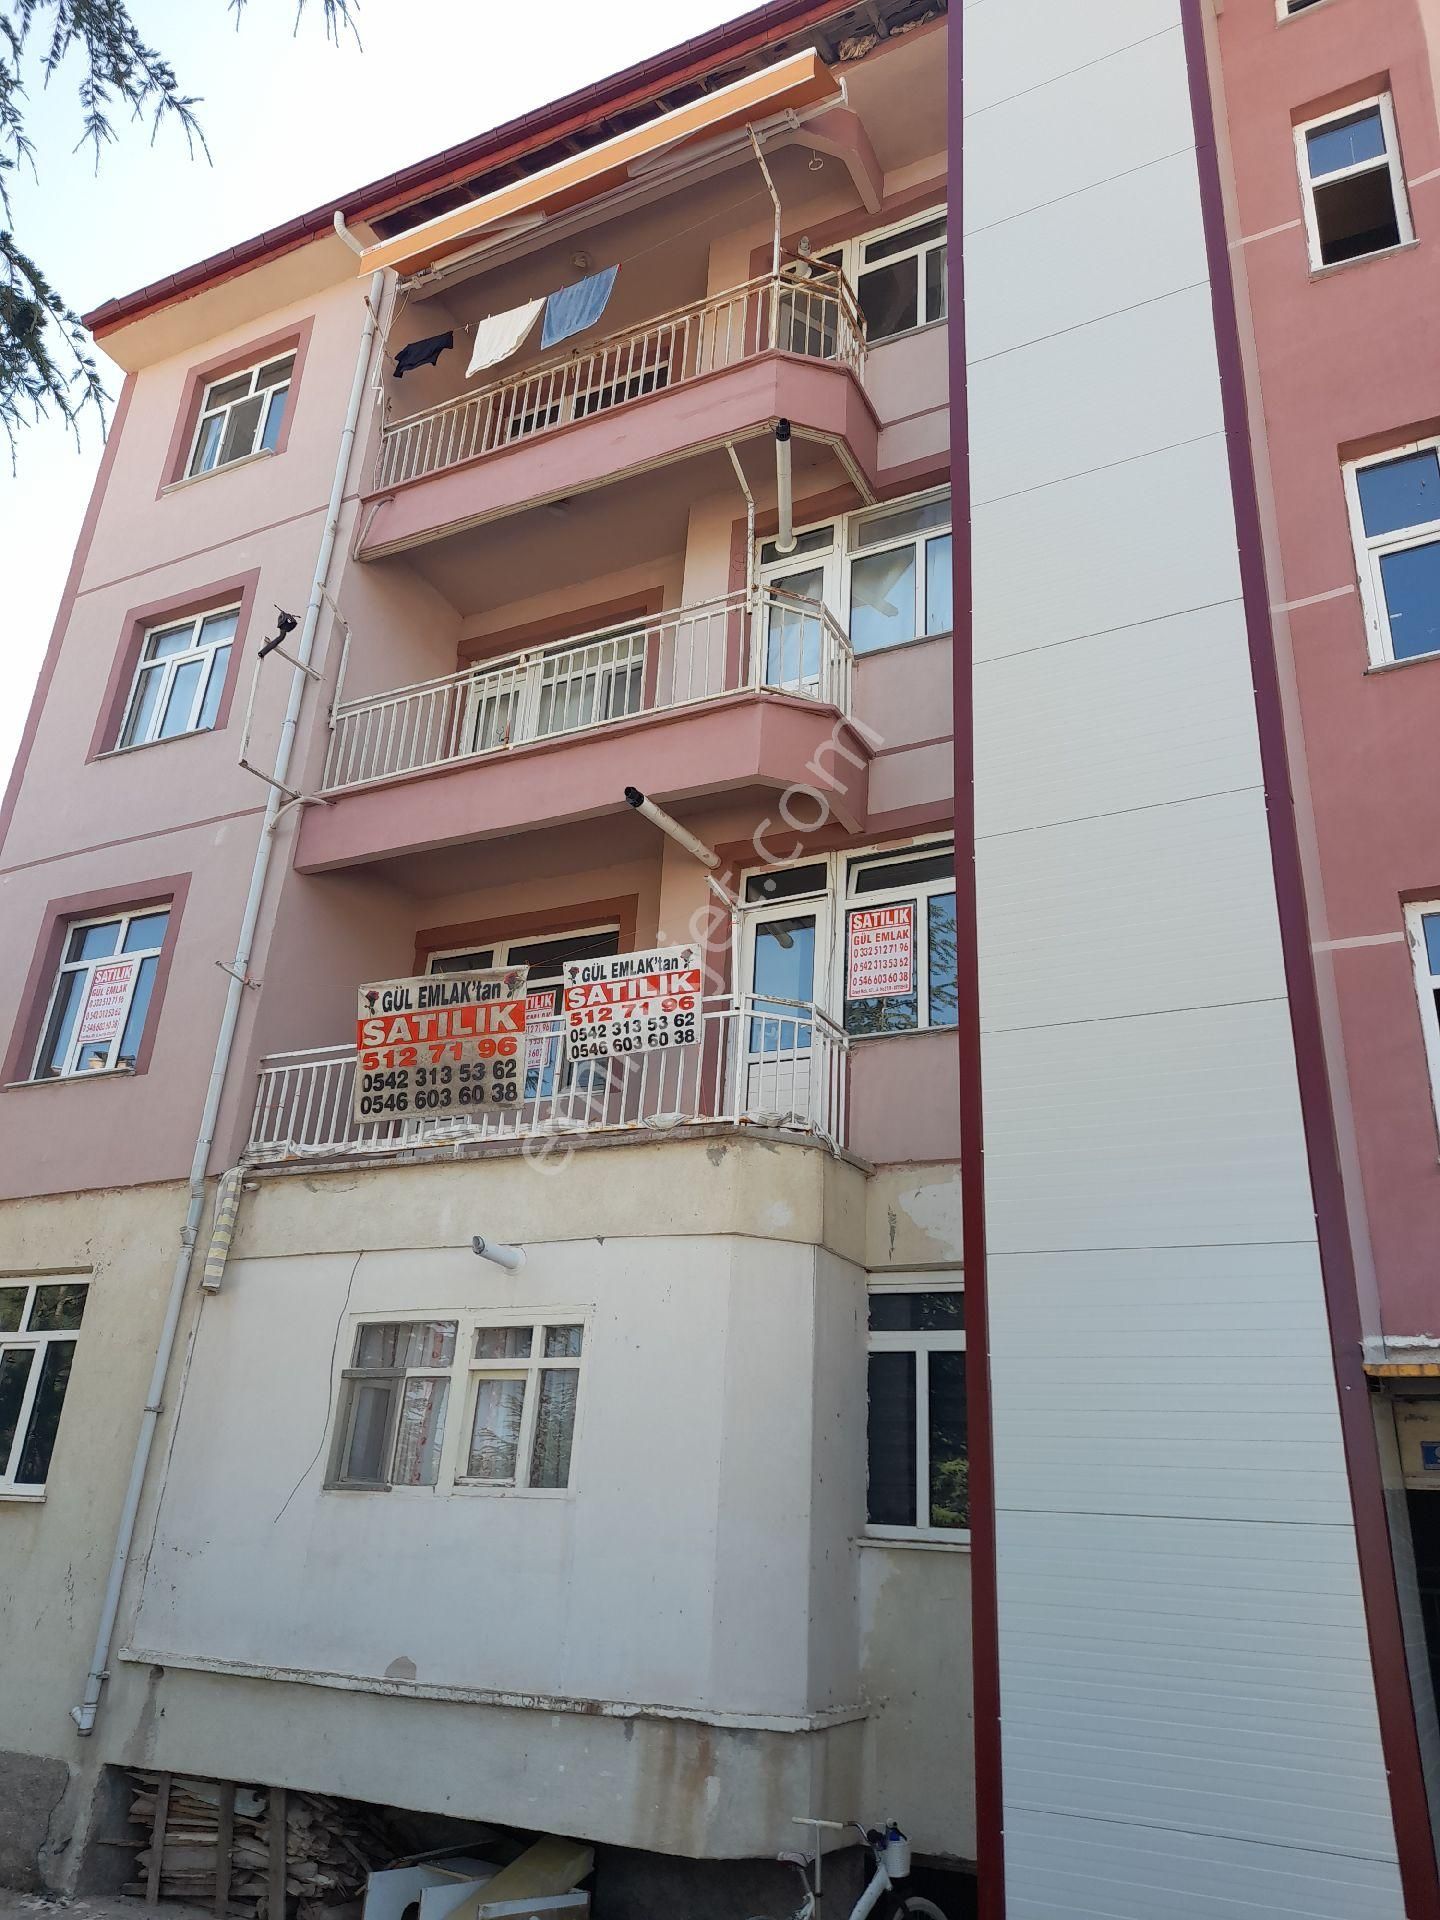 Beyşehir Beytepe Satılık Daire Gül emlaktan beytepe mahallesinde 2+1satlık 120 m2 daire